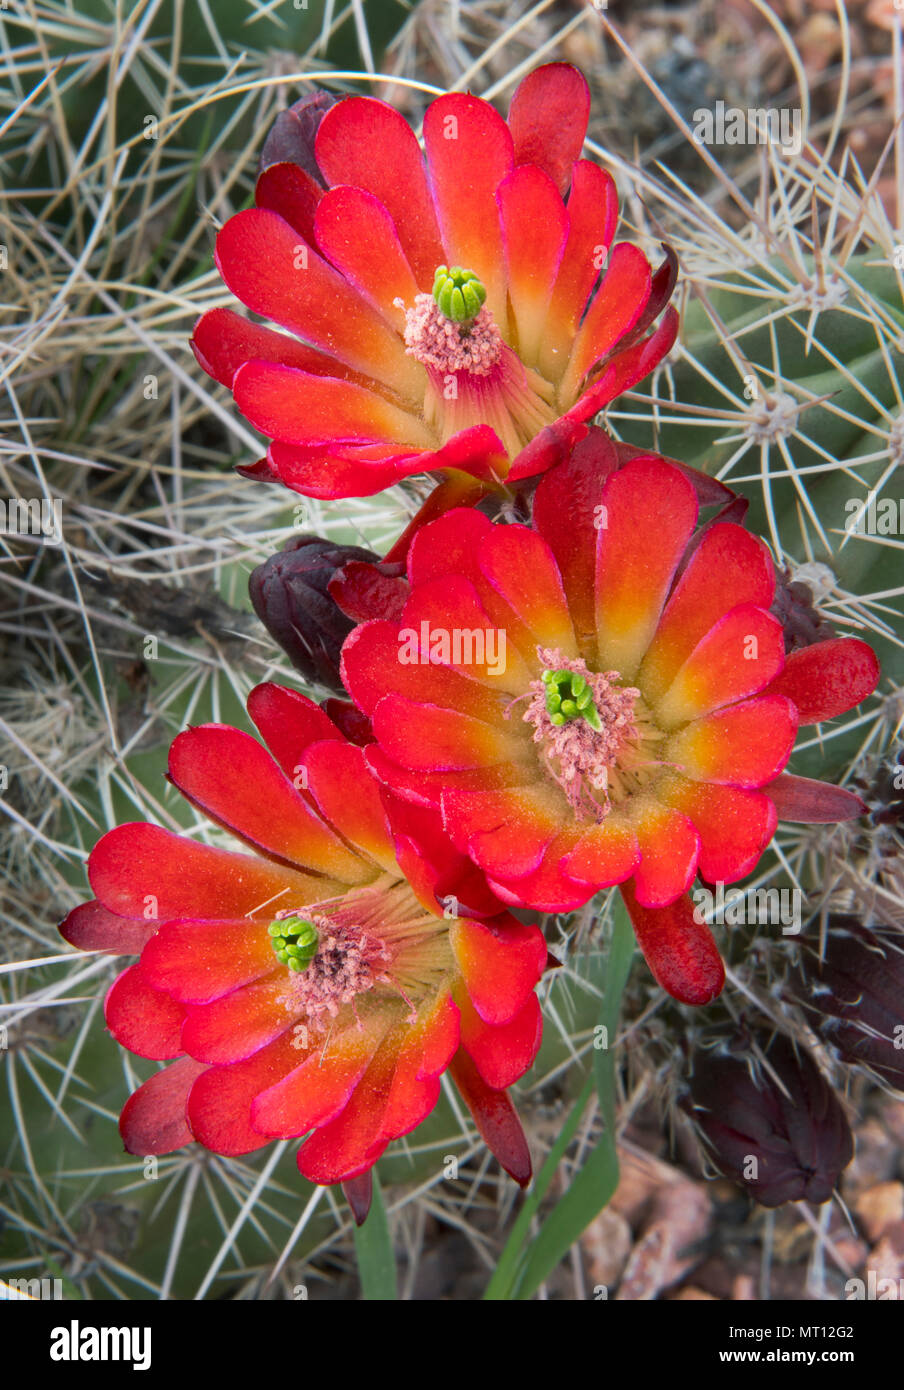 Claret-cup Hedgehog Cactus (Echinocereus)  in Bloom, Zion National Park, Utah Stock Photo